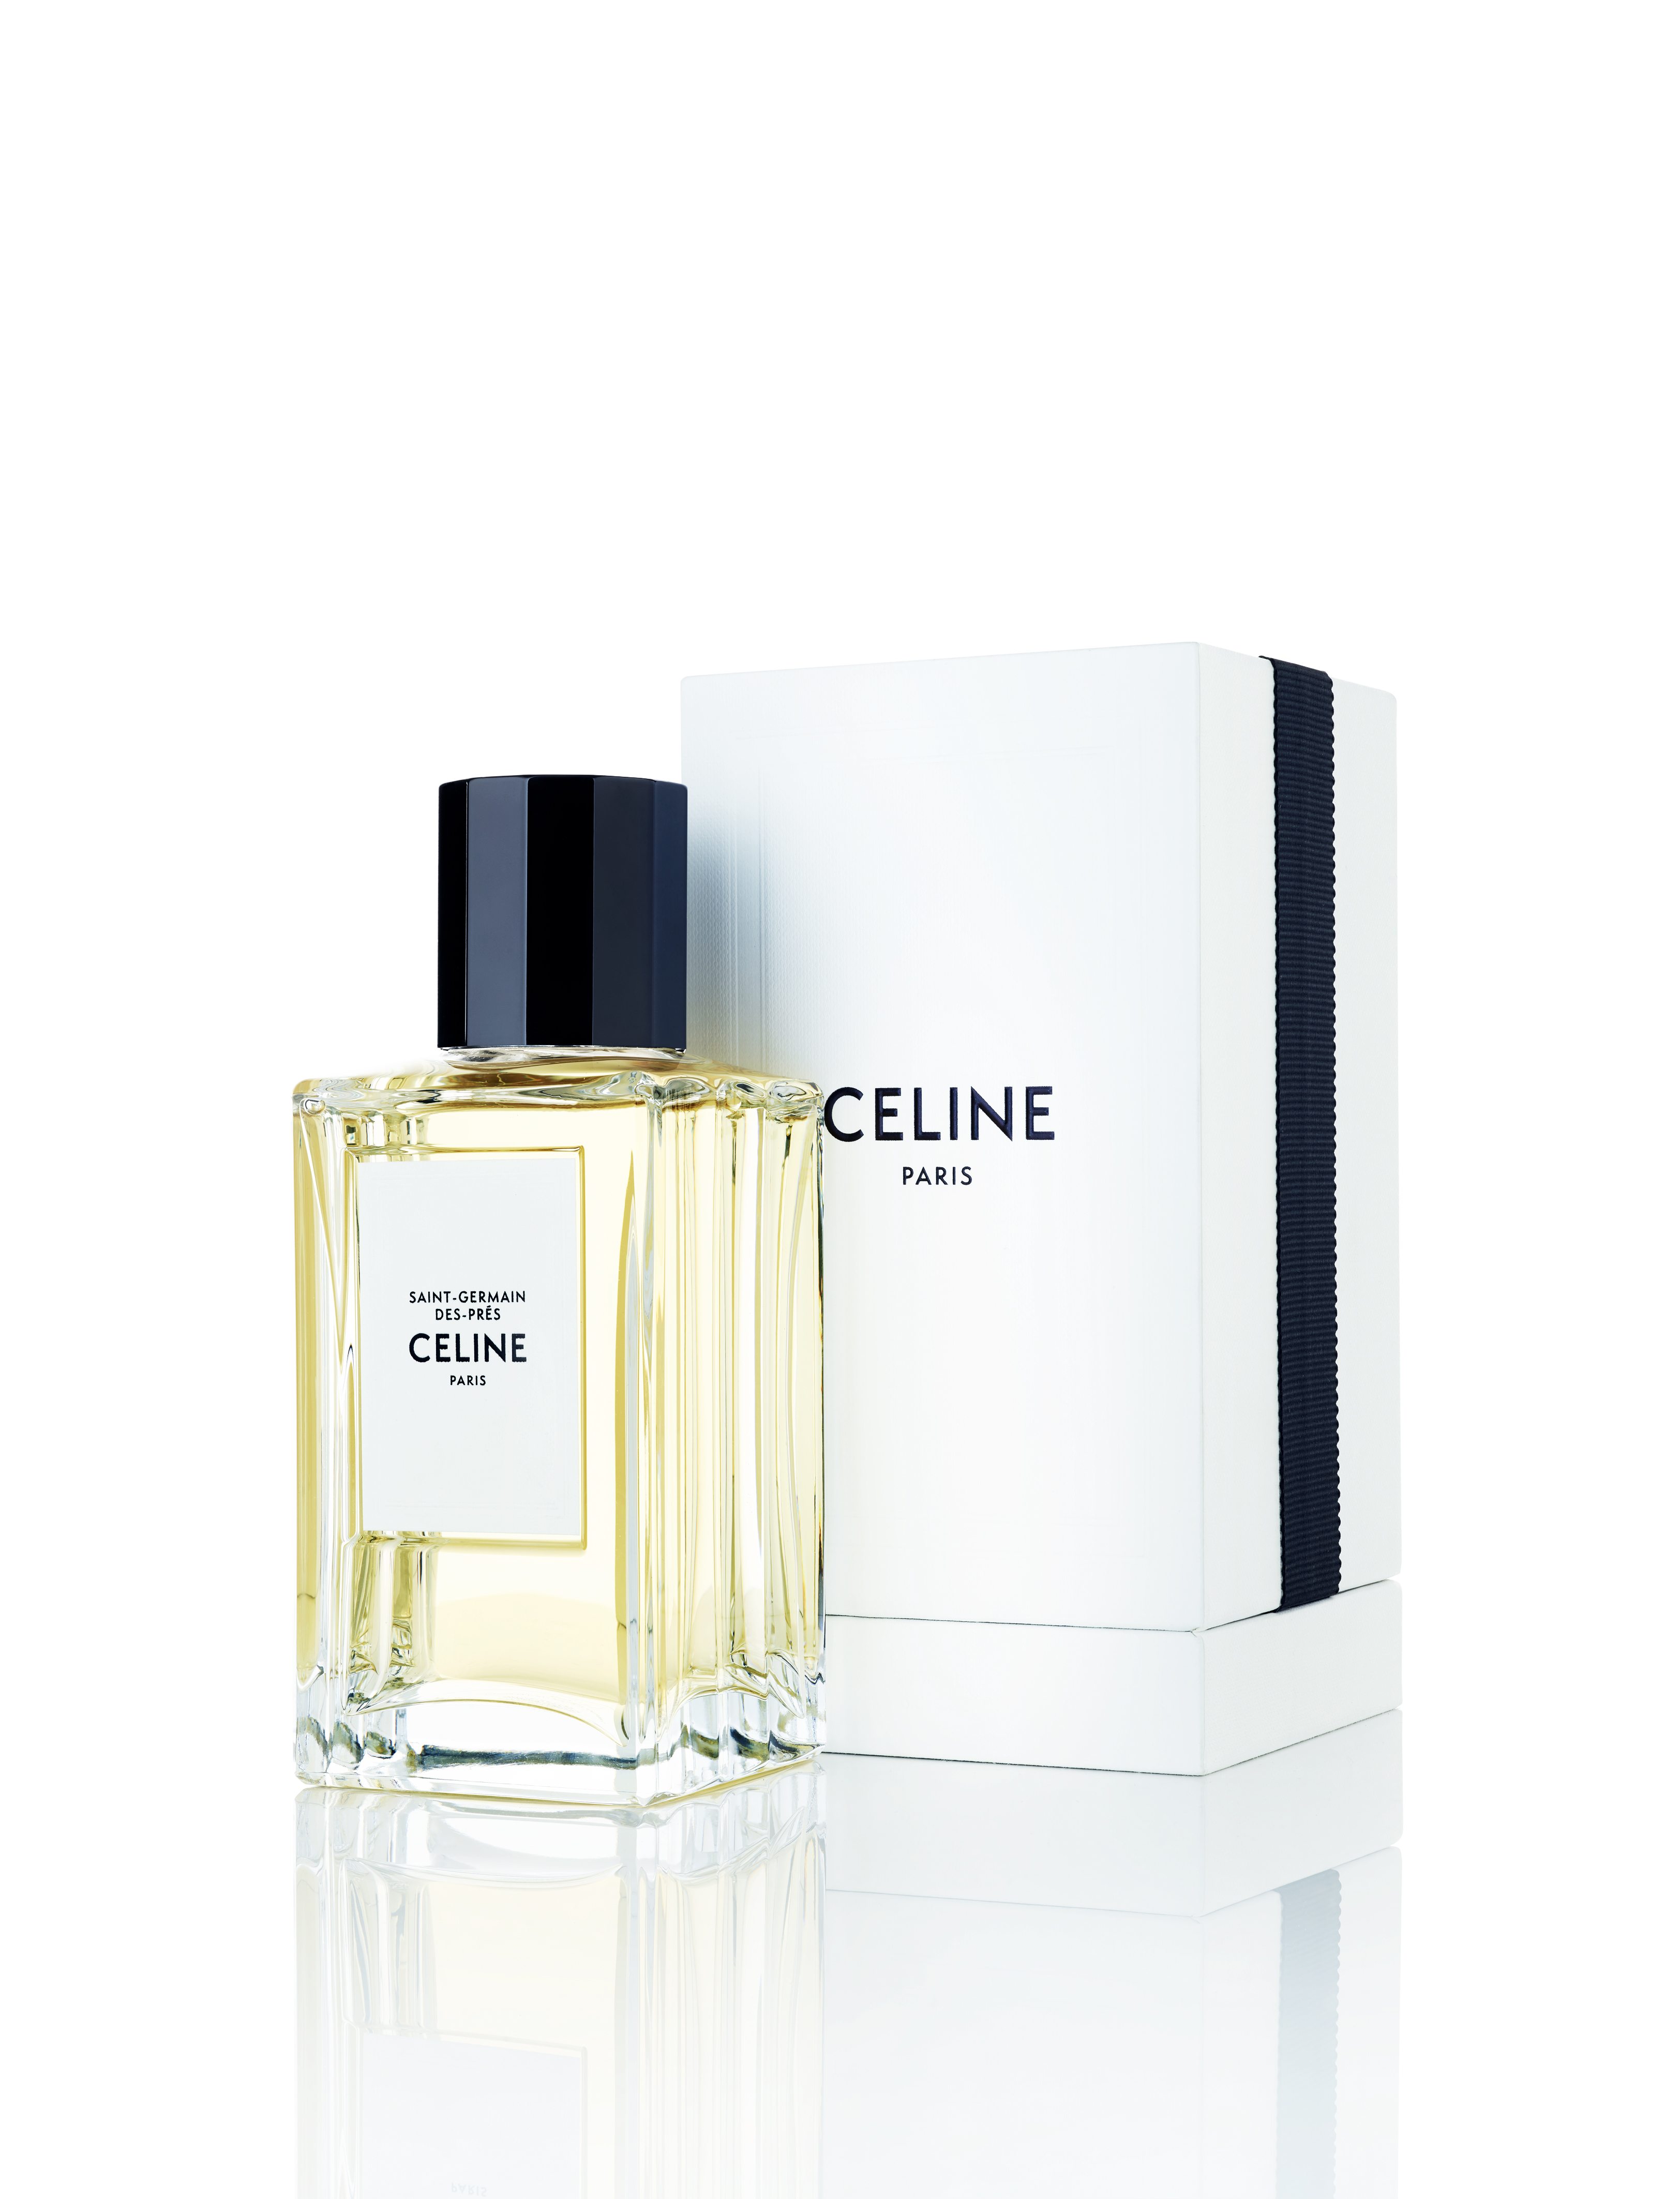 “Saint-Germain-des-Prés”, eau de parfum, collection Haute Parfumerie, CELINE.